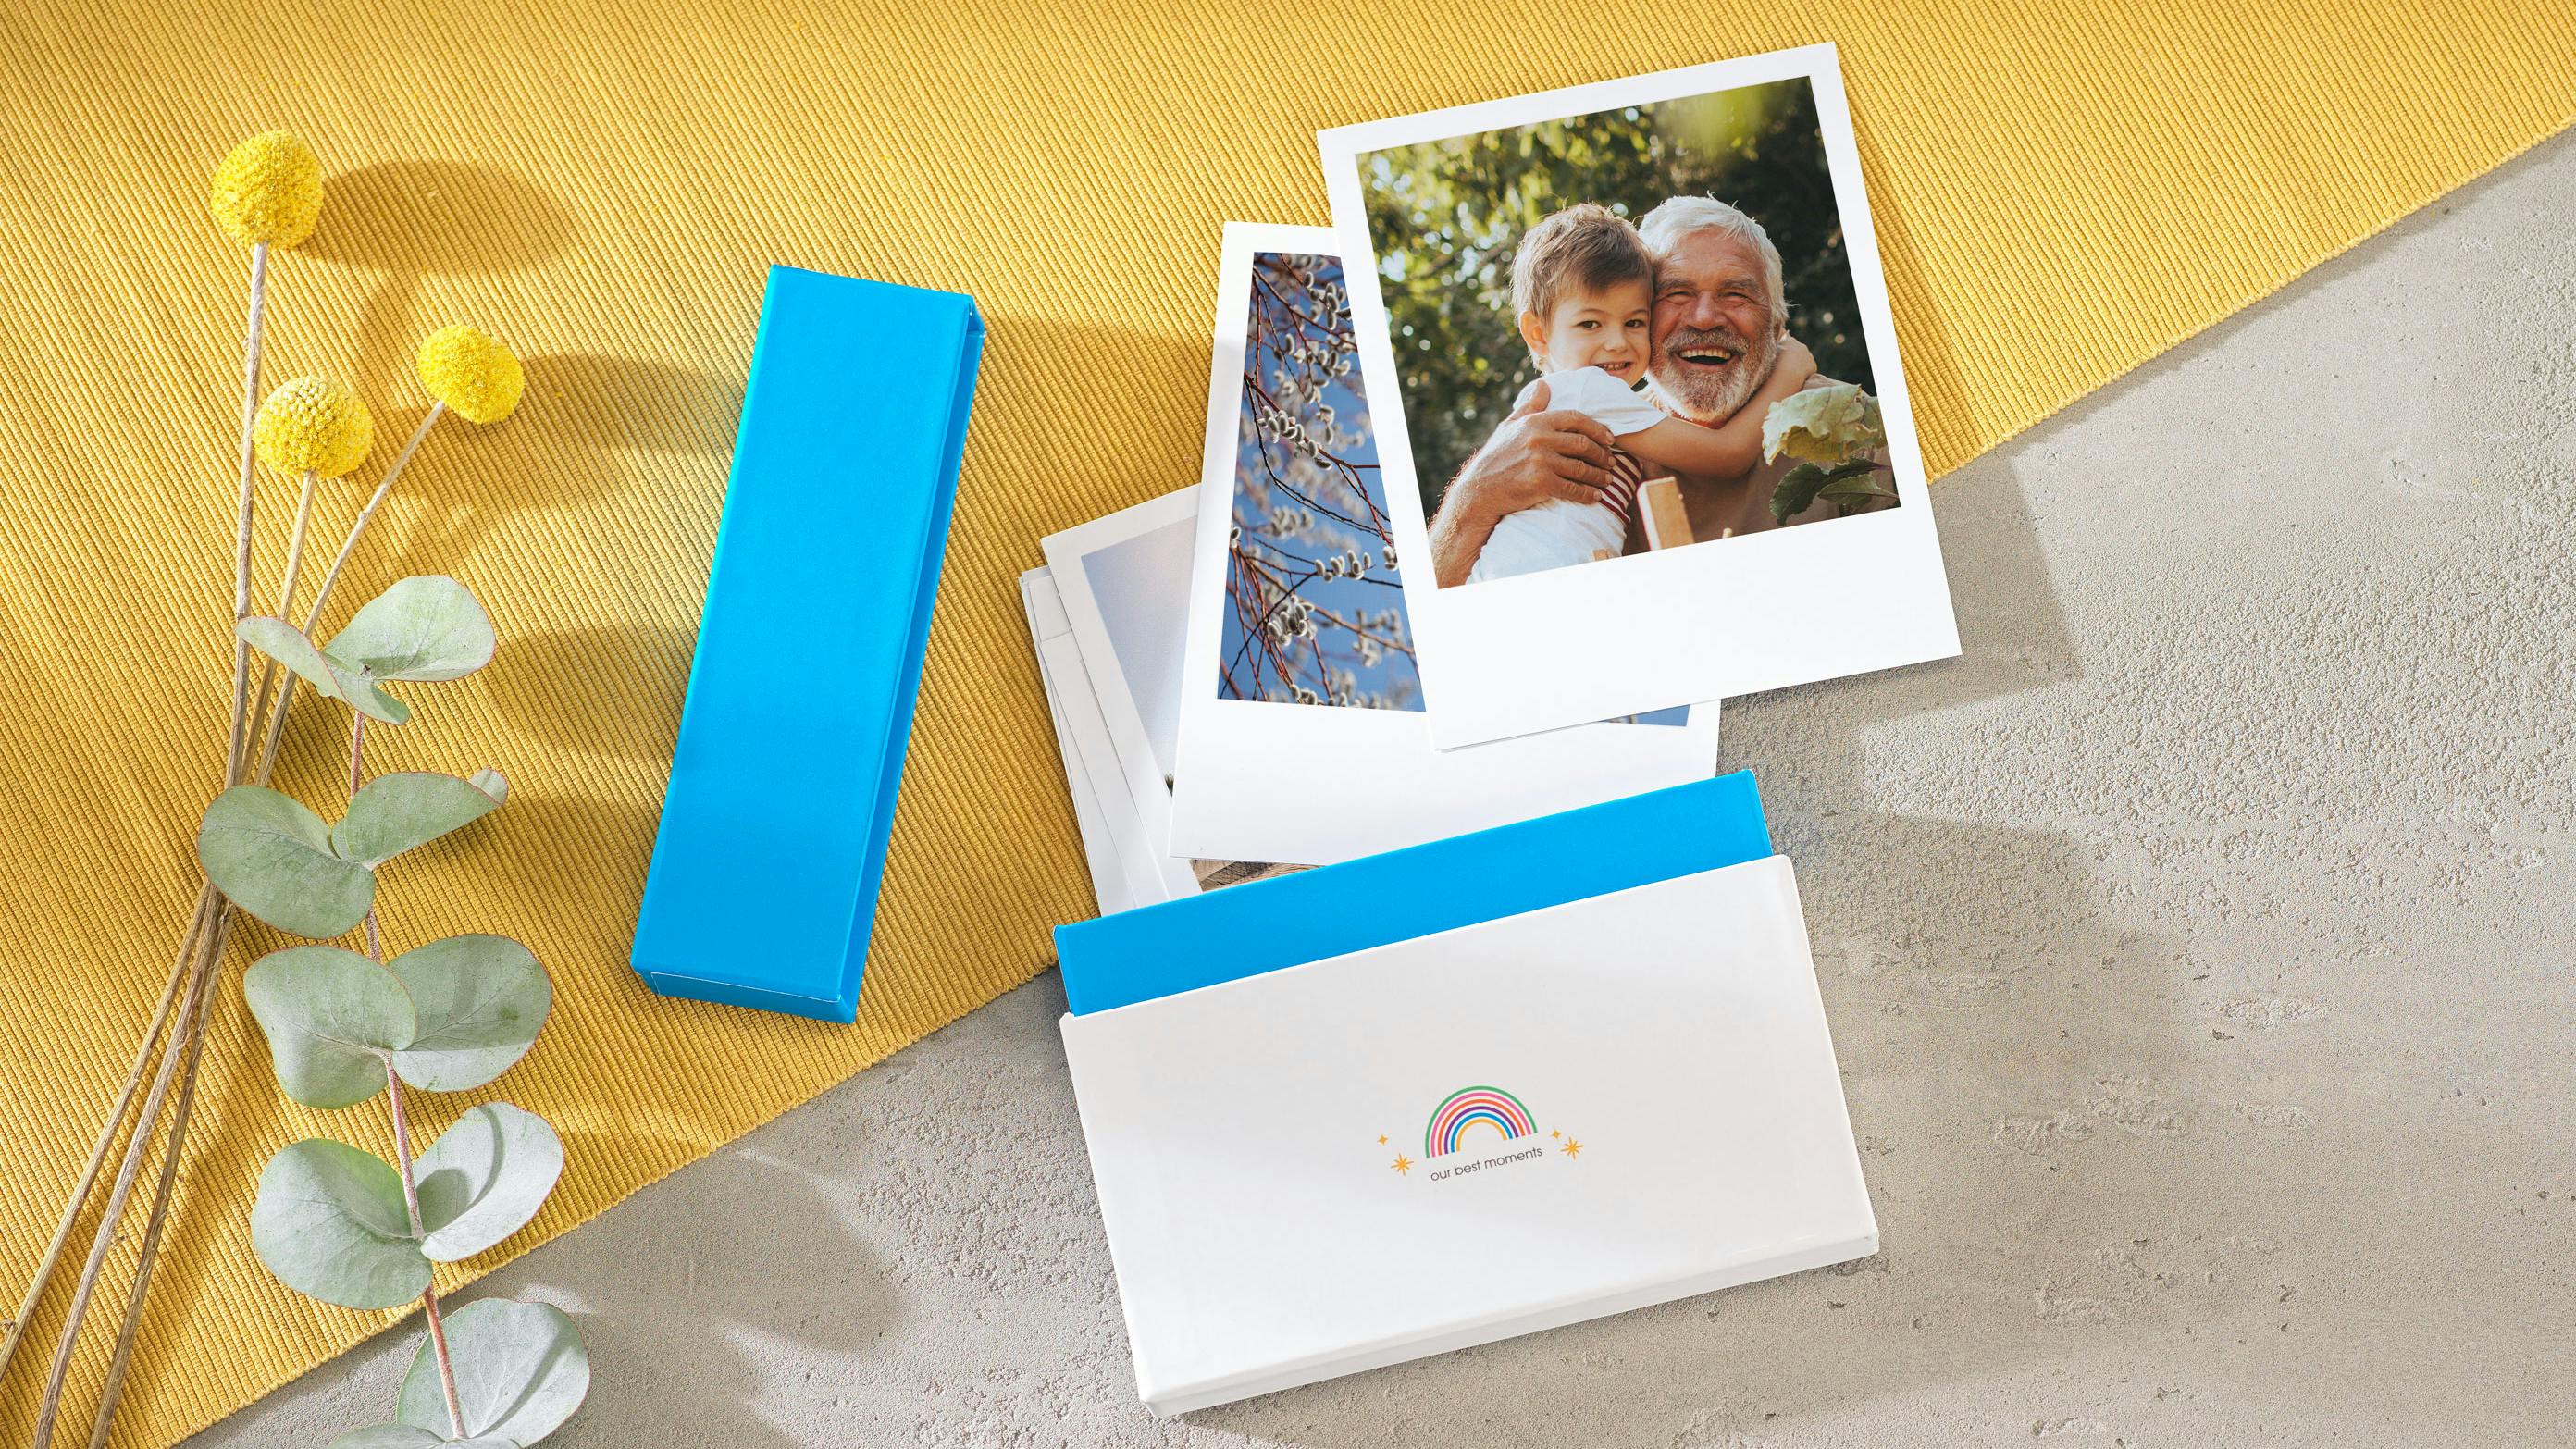 Retro prints box met regenboog design en familiefoto's in ambiance